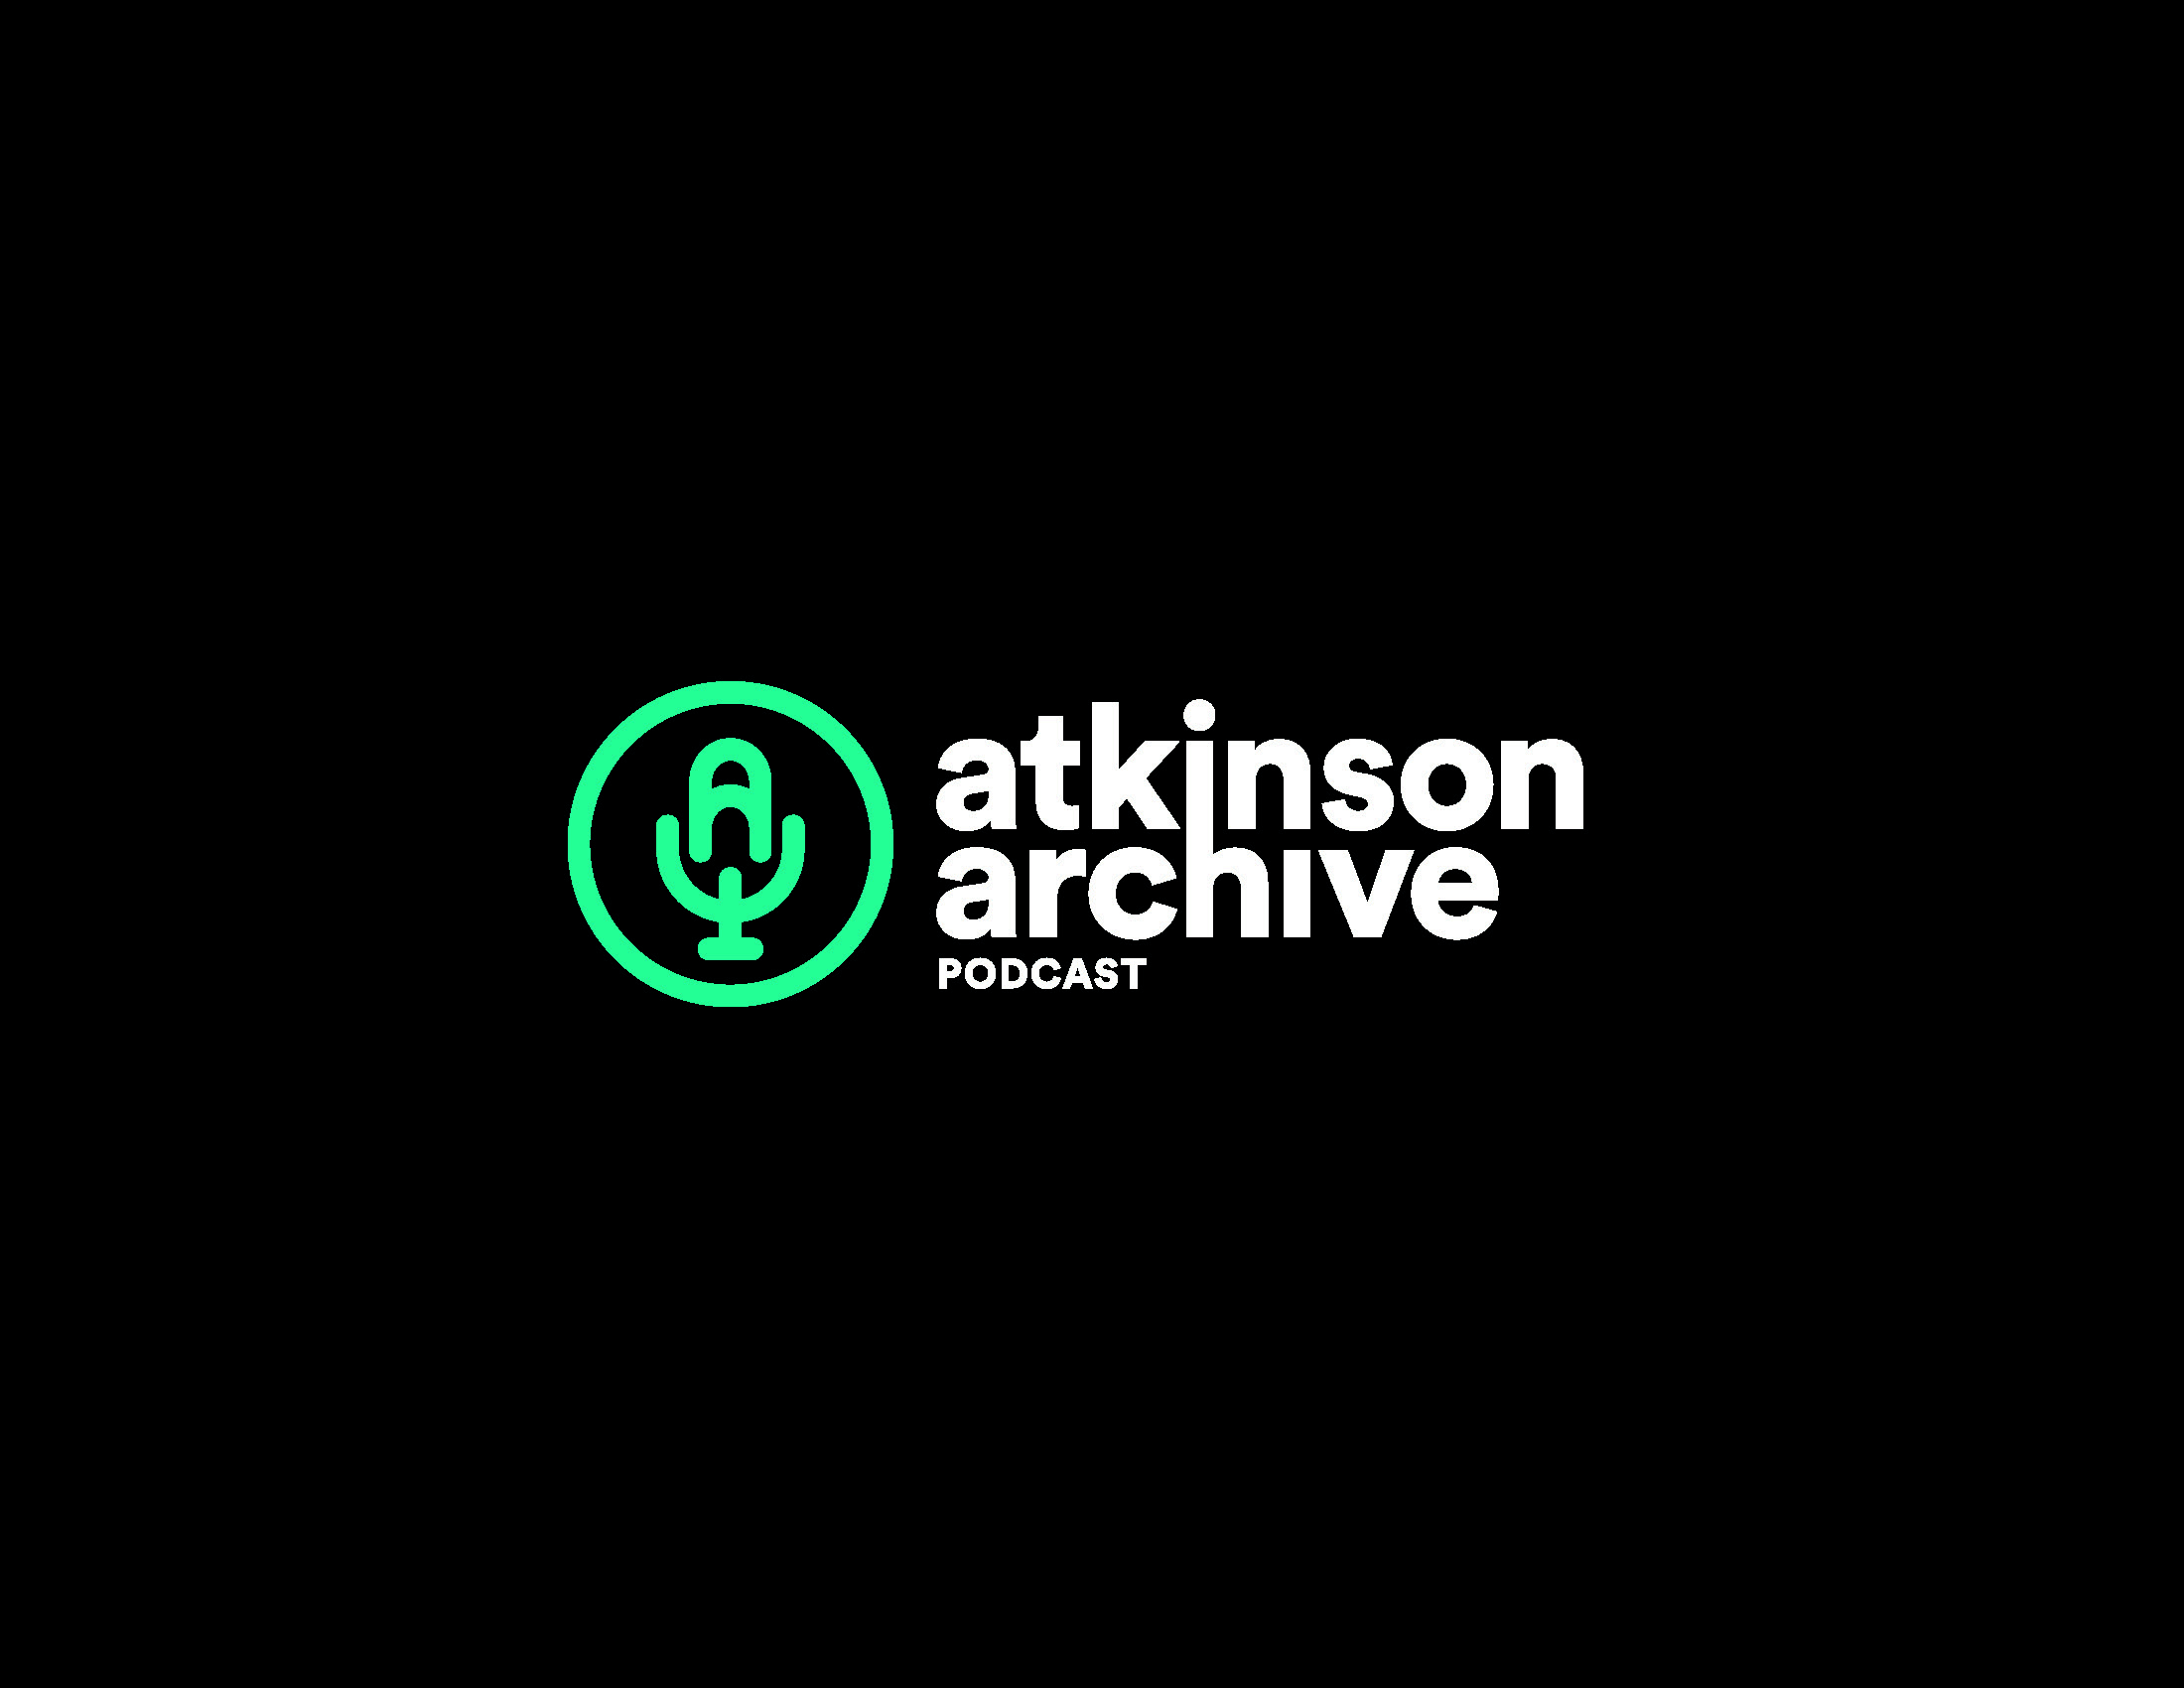 atkinson-archive-podcast